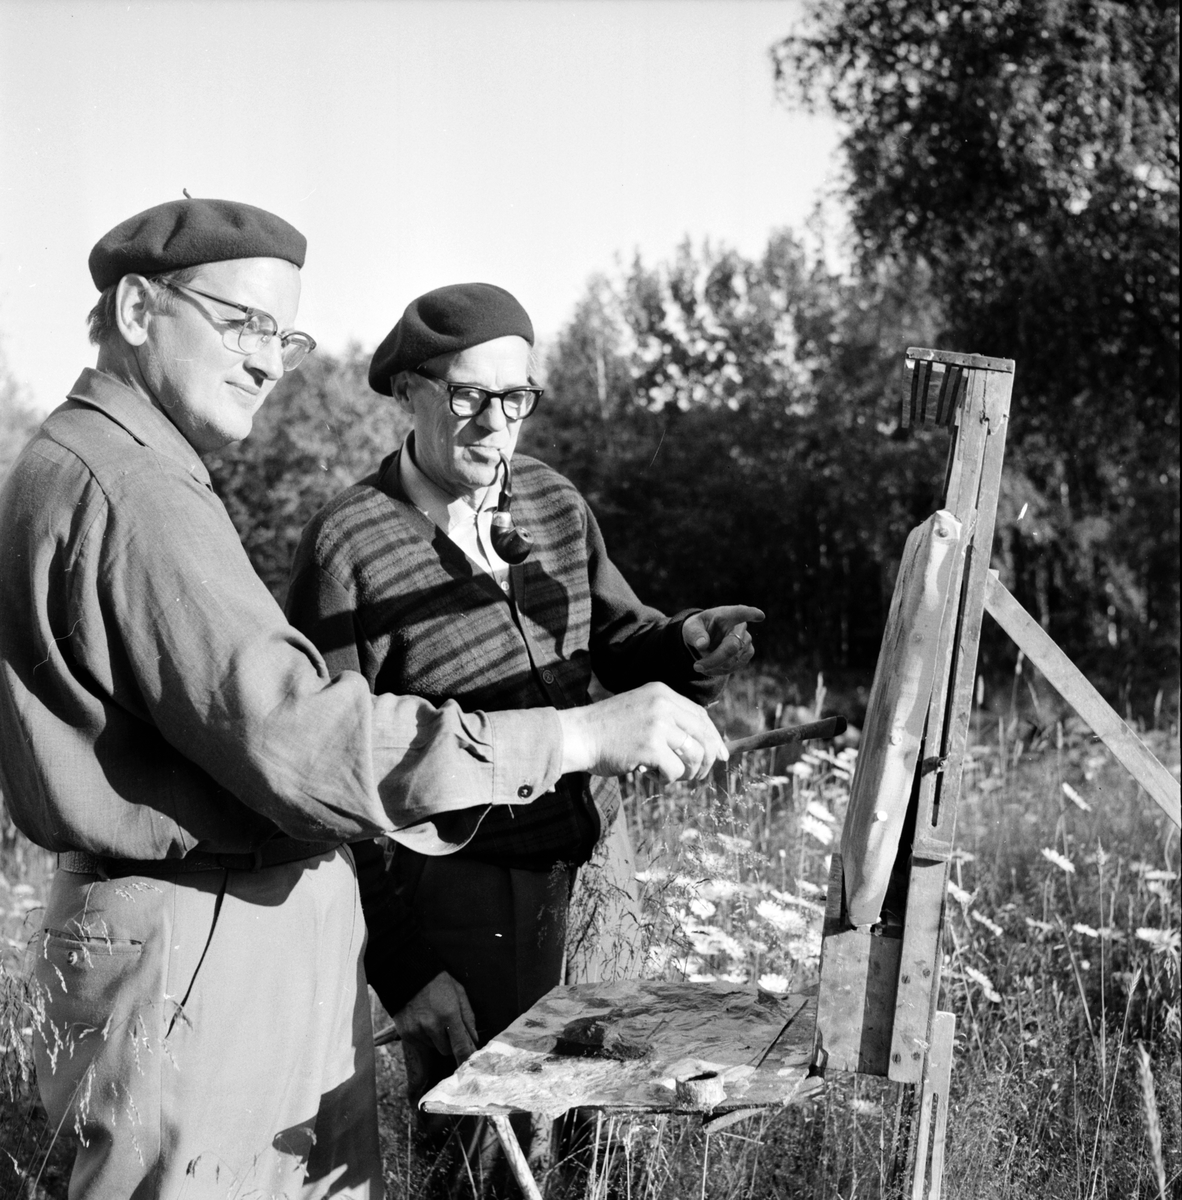 Olovsfors,
Målarkolonin hos Lisa Jonsson, Fritiof Strandberg, Erik Lövgren,
22 Juli 1965